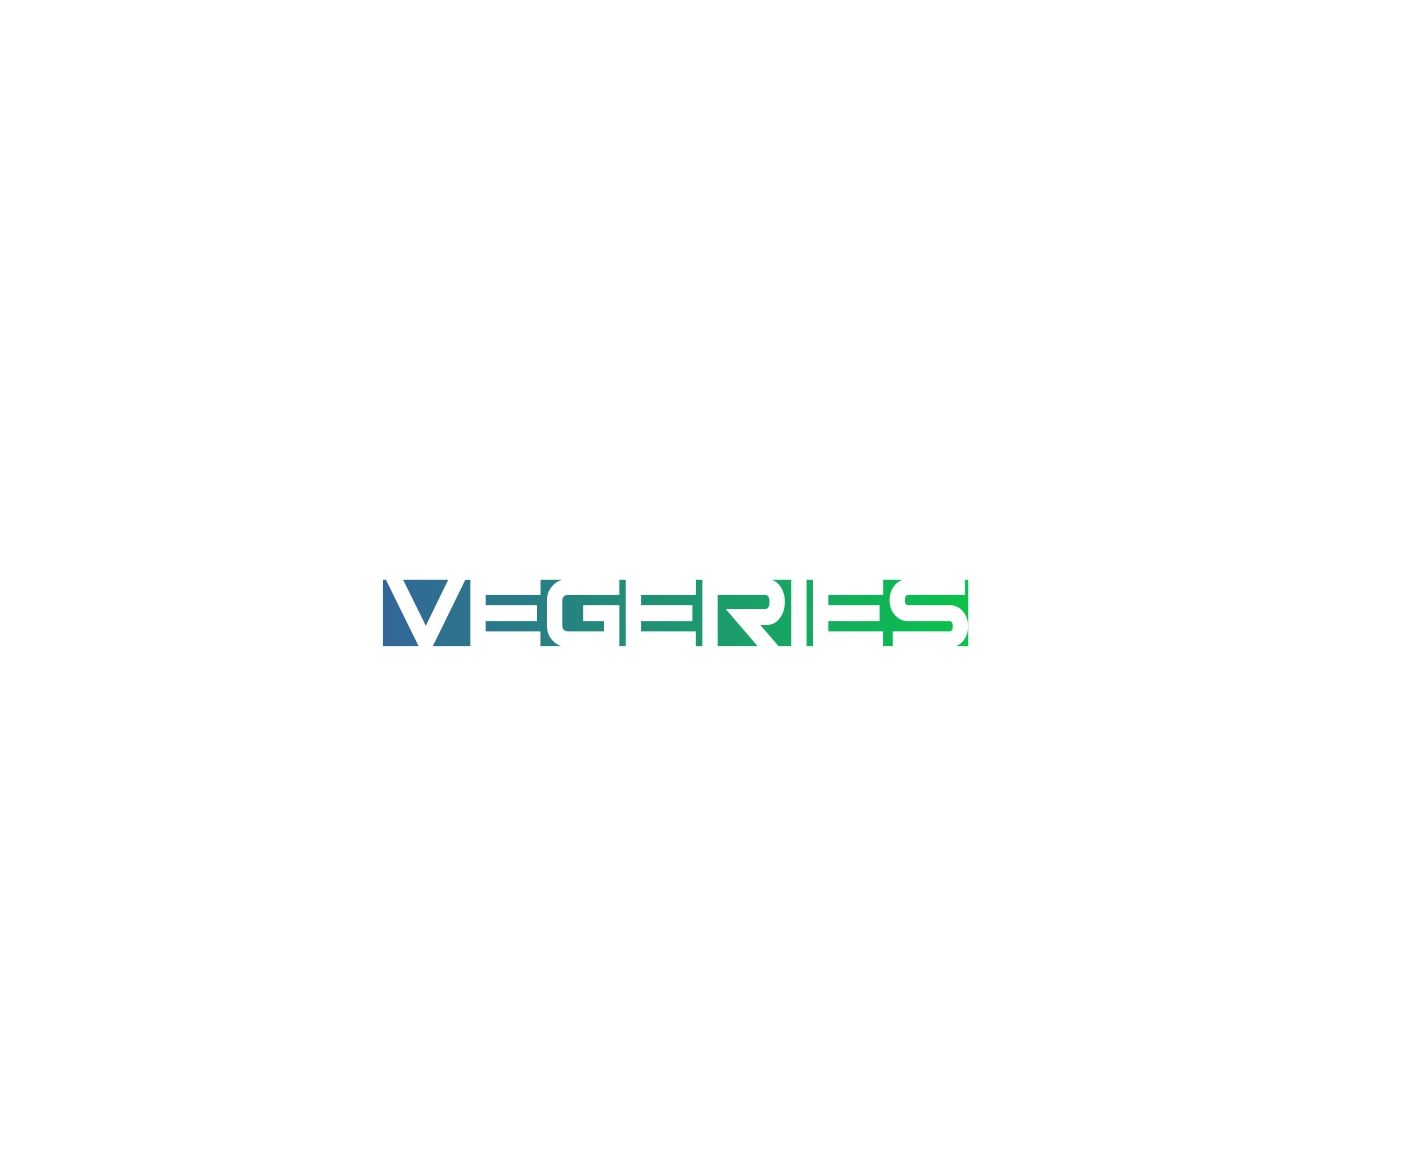 Логотип для vegeries - дизайнер anstep